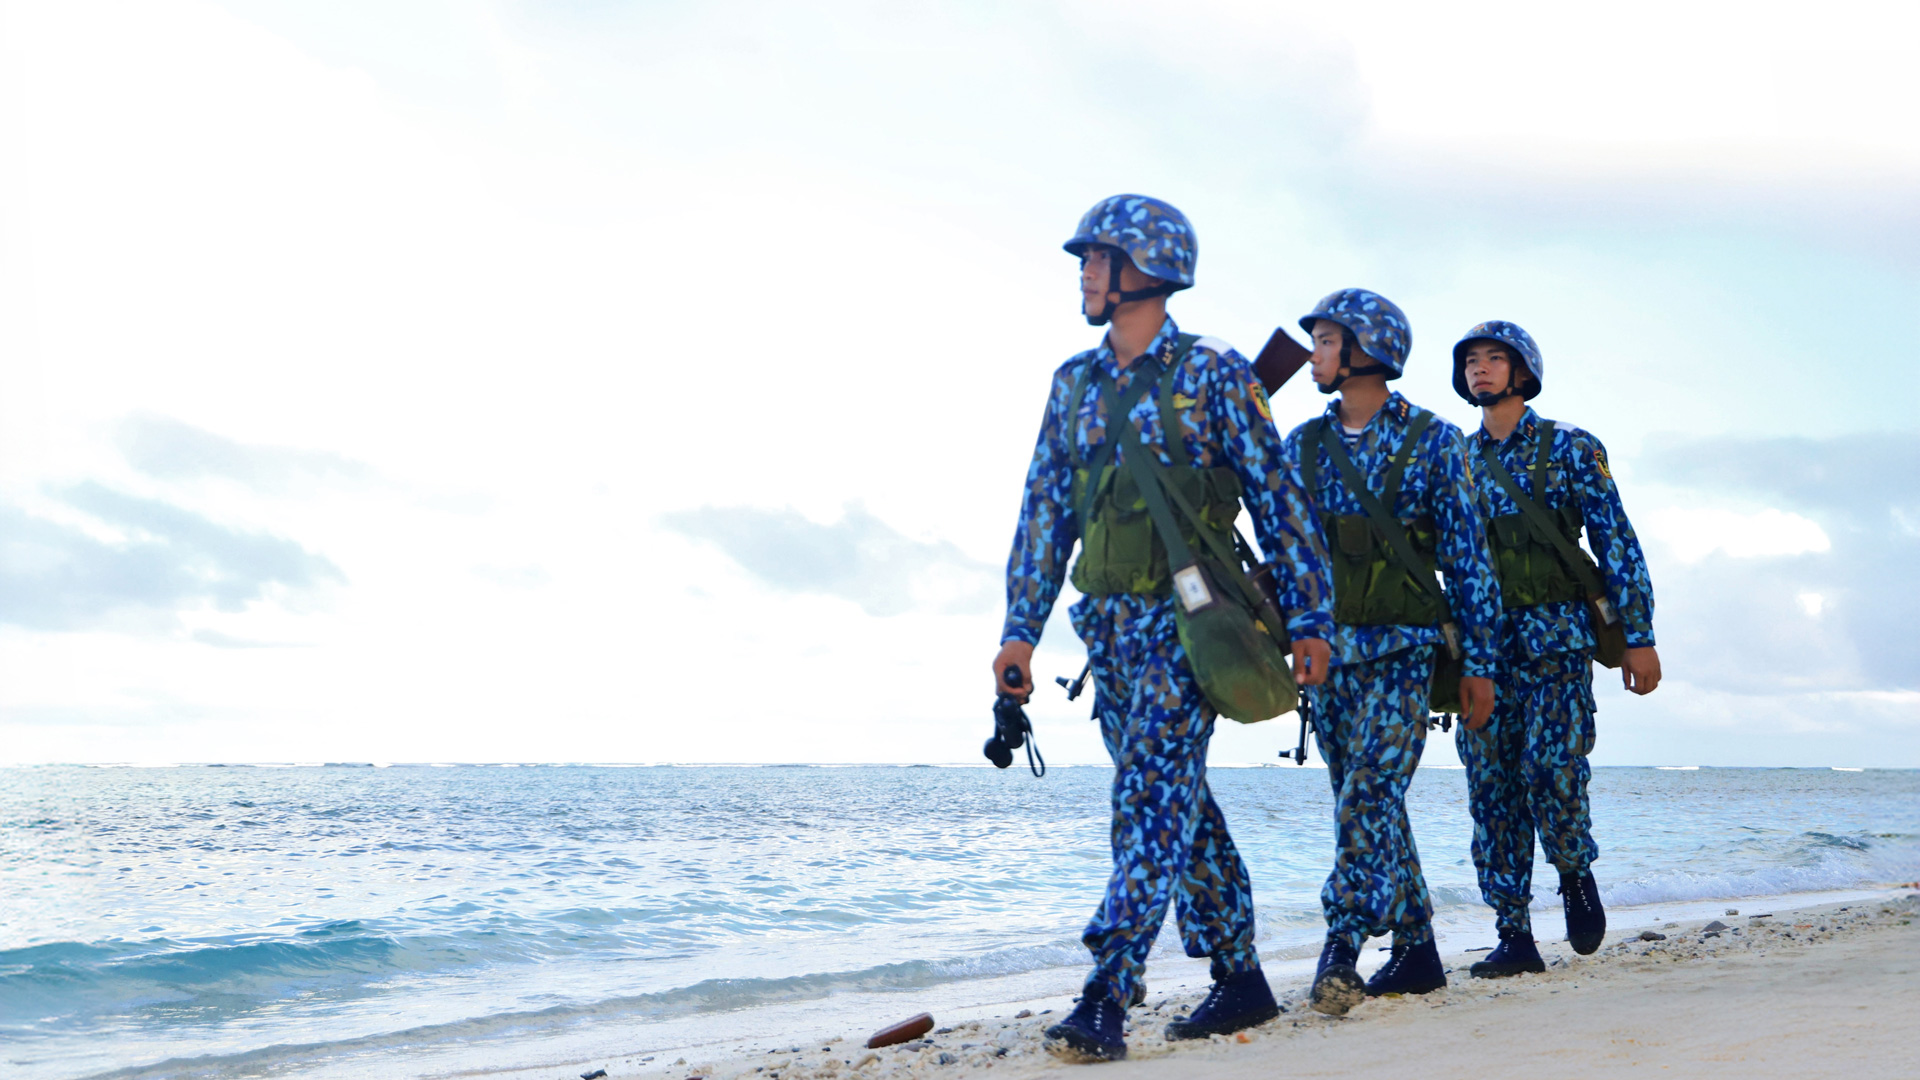 Lính đảo vững chắc tay súng tuần tra bảo vệ chủ quyền biển, đảo linh thiêng của Tổ quốc. Ảnh: Khánh Phúc